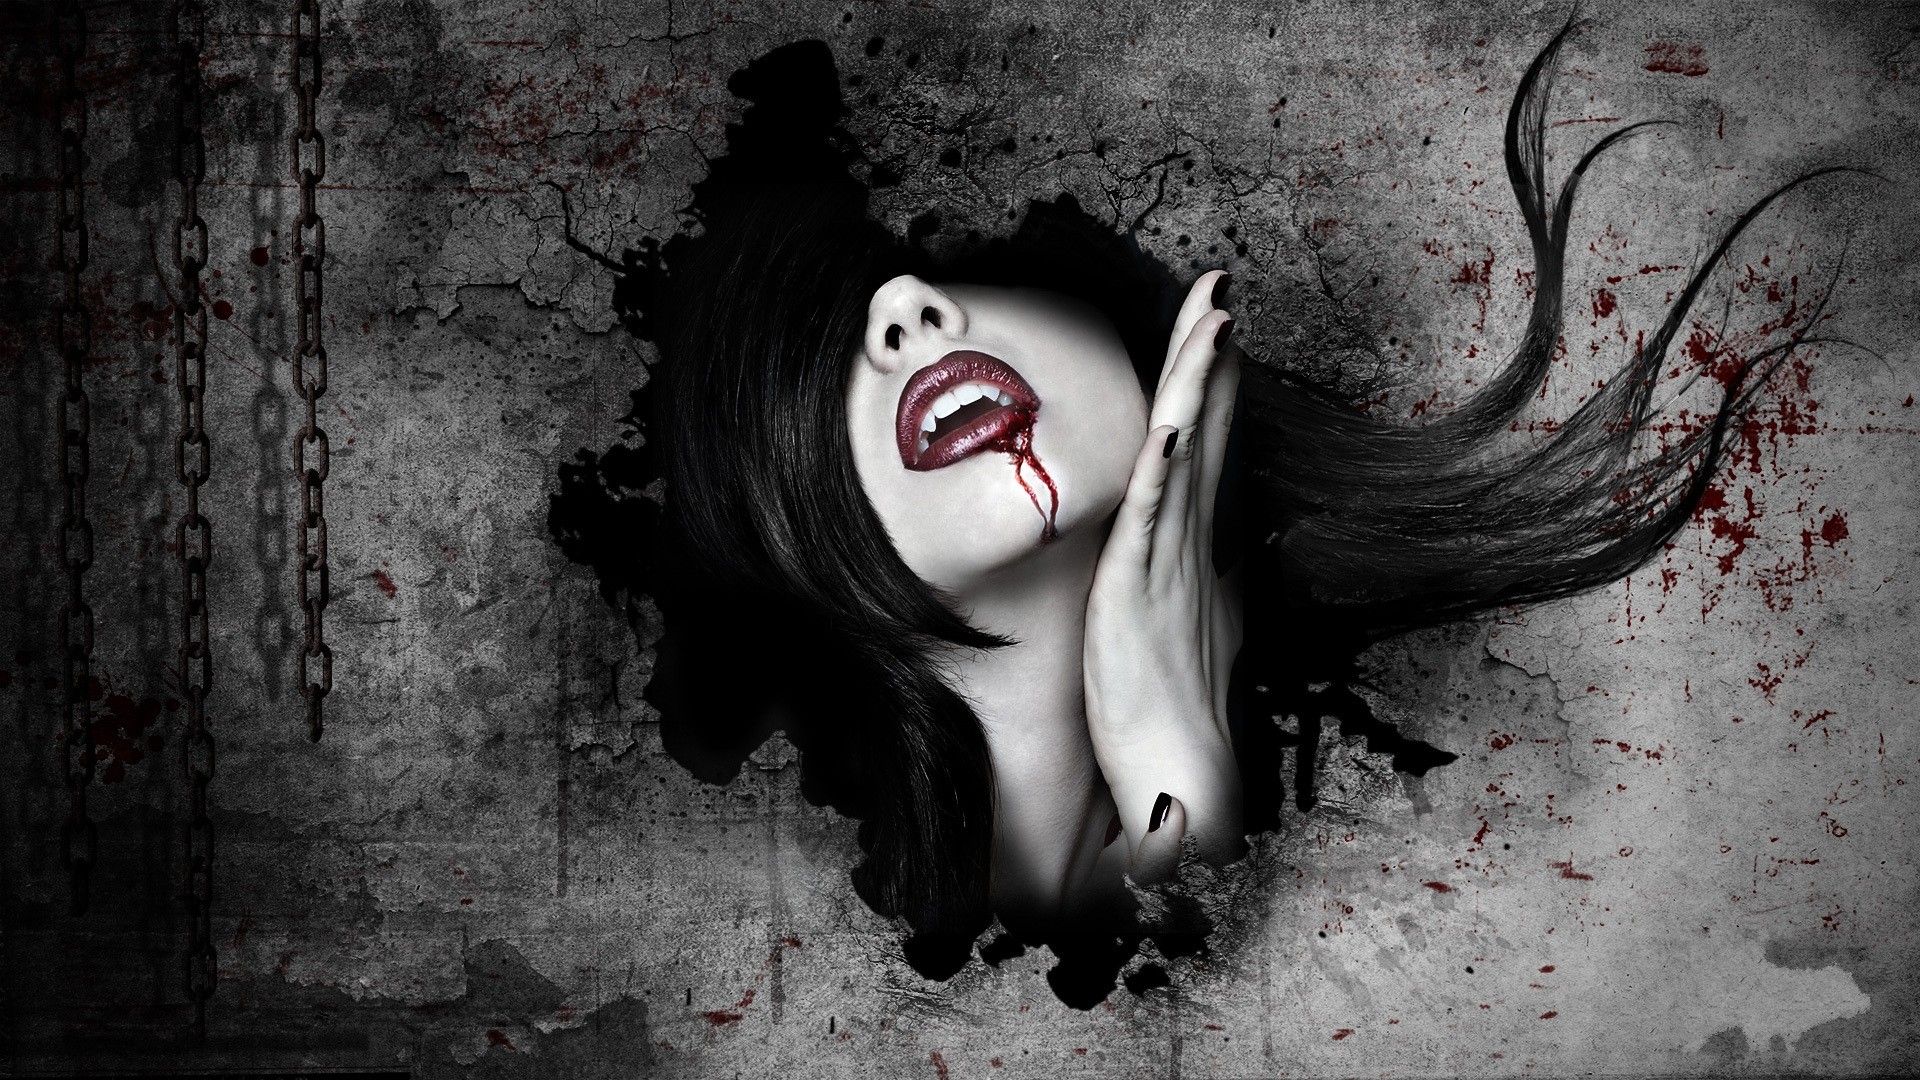 Free download dark horror fantasy art gothic women vampires blood